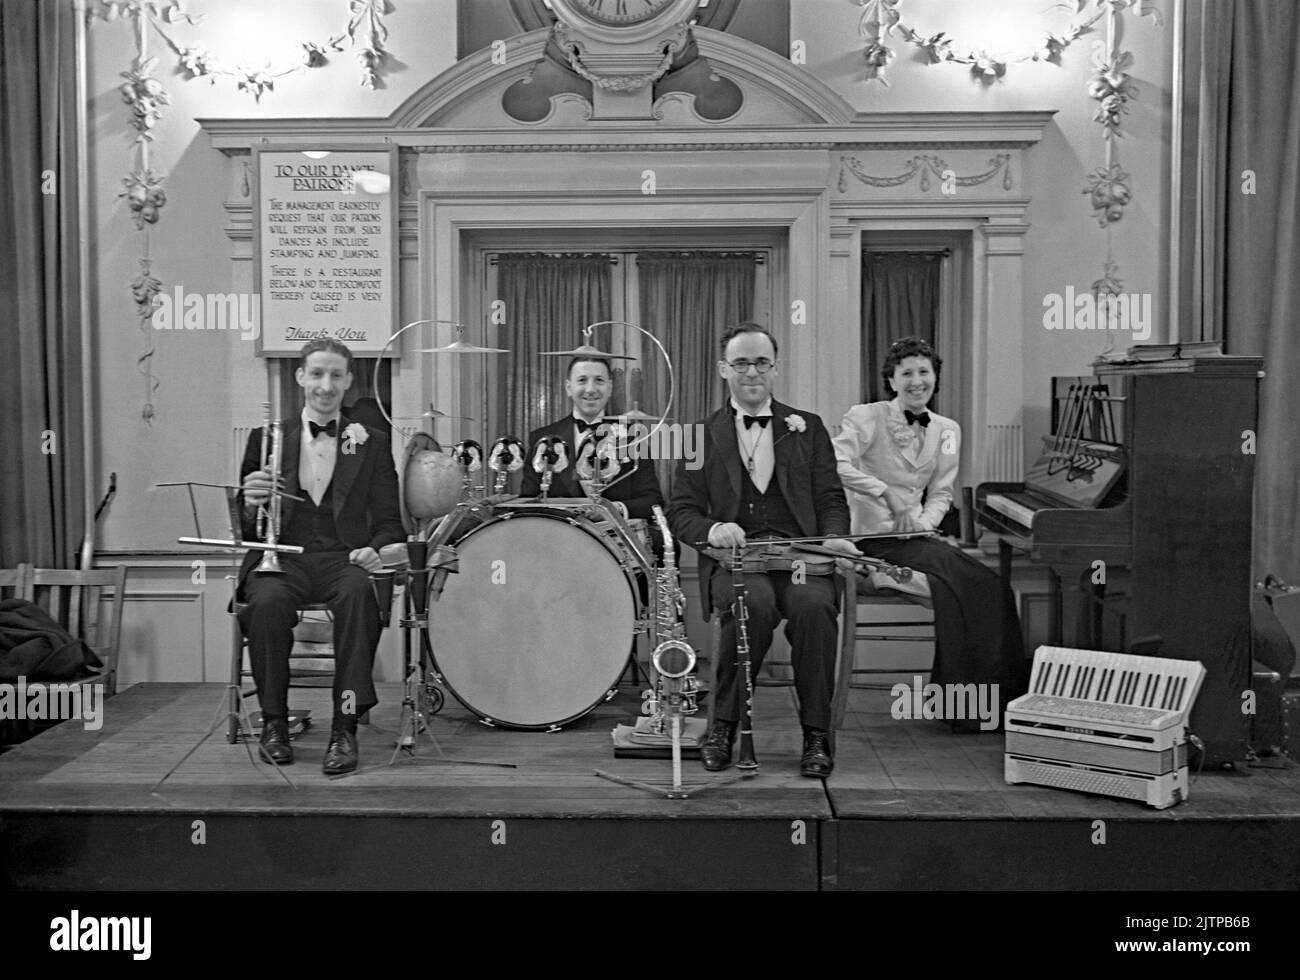 Eine britische vierköpfige Tanzband mit Mitgliedern des De Berrys Trios spielt 1939 in einem Londoner Hotel, England, bei einem Wohltätigkeitstanz zugunsten des NSPCC (National Society for the Prevention of Cruelty to Children). Das Schild hinter der Band fordert, dass Tänzer ‘Stampfen und Springen’ unterlassen sollten. Frühe Tanz- und Swing-Bands hatten ihre Blütezeit in Großbritannien während der Jahre 1920s–30s. Bands spielten in Tanzsälen und Hotelballsälen. Sie spielten melodische, gute-Zeit-Musik und einzelne Spieler spielten in mehreren Bands. Dieses Bild stammt aus einem alten Glas-Negativ – einem Vintage-Foto aus dem Jahr 1930s. Stockfoto